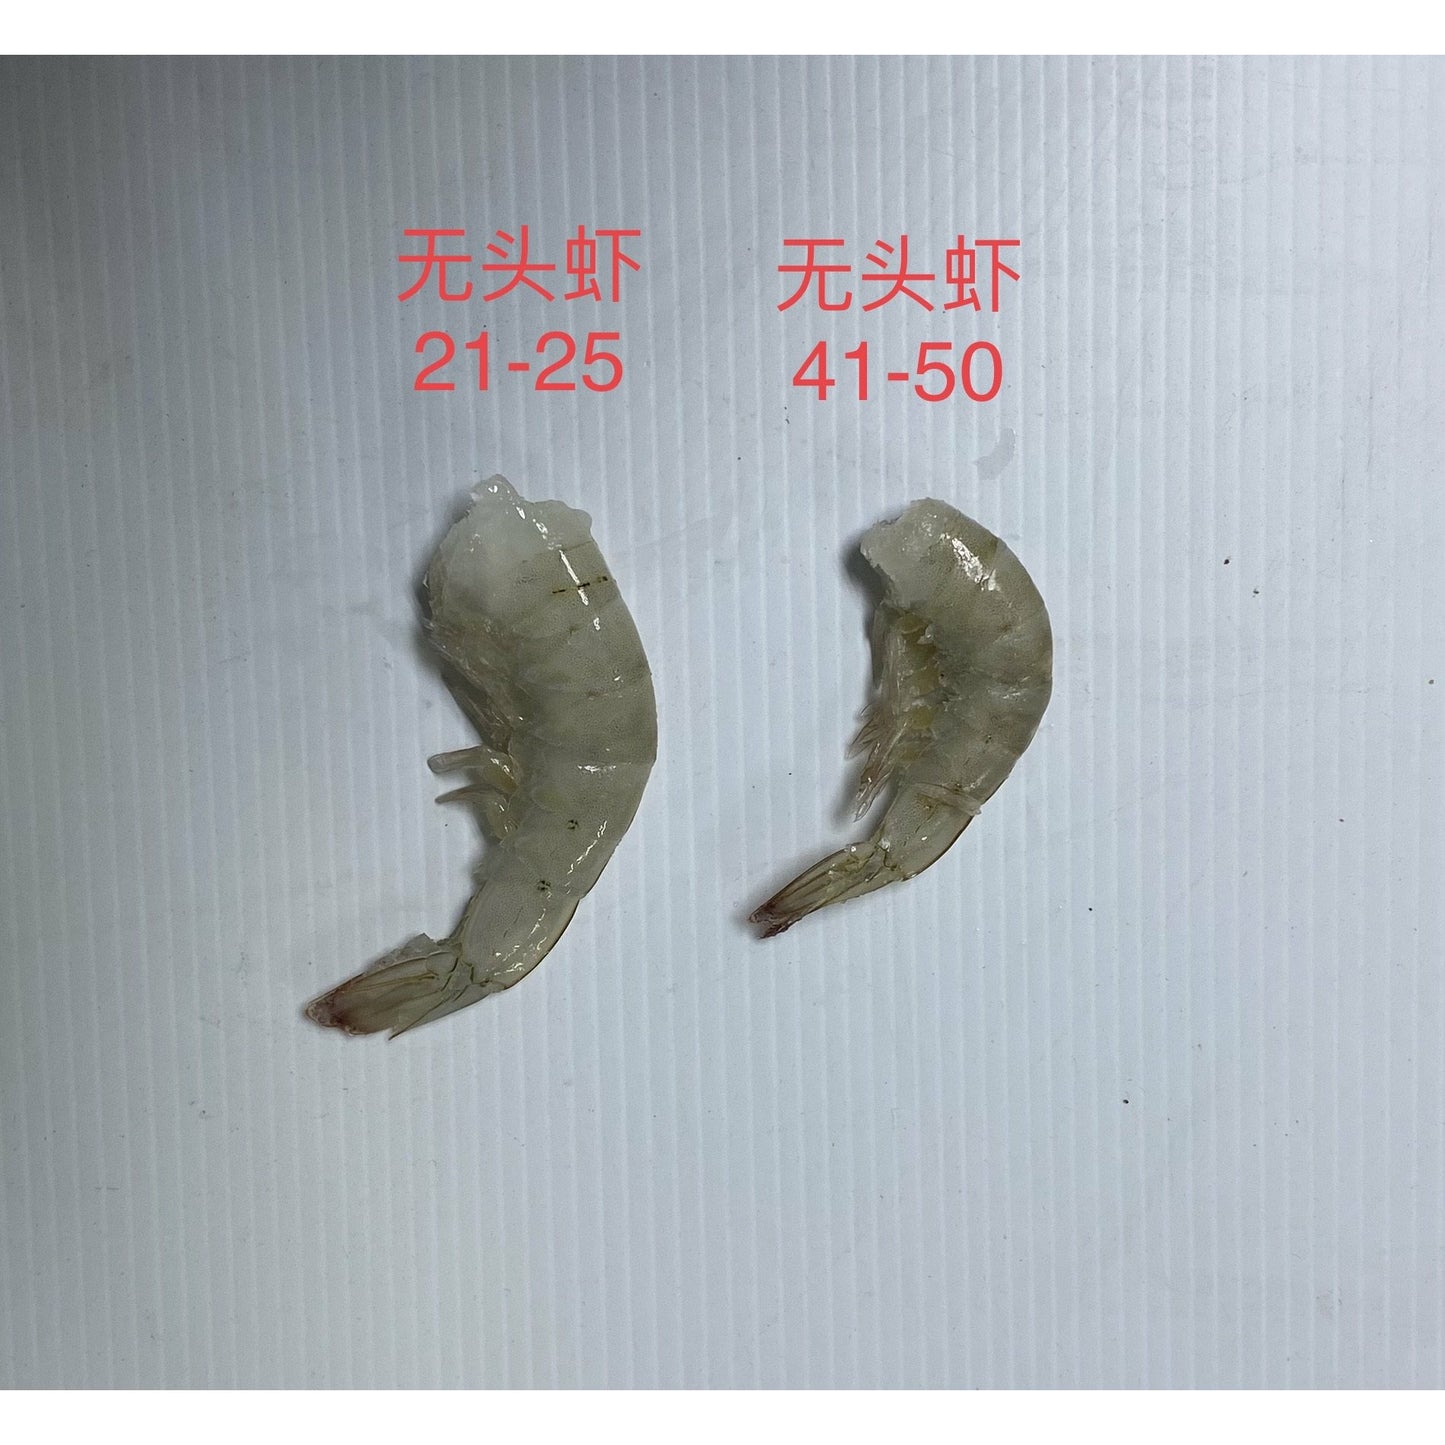 21-25 大无头虾   (约1.9-2lbs)